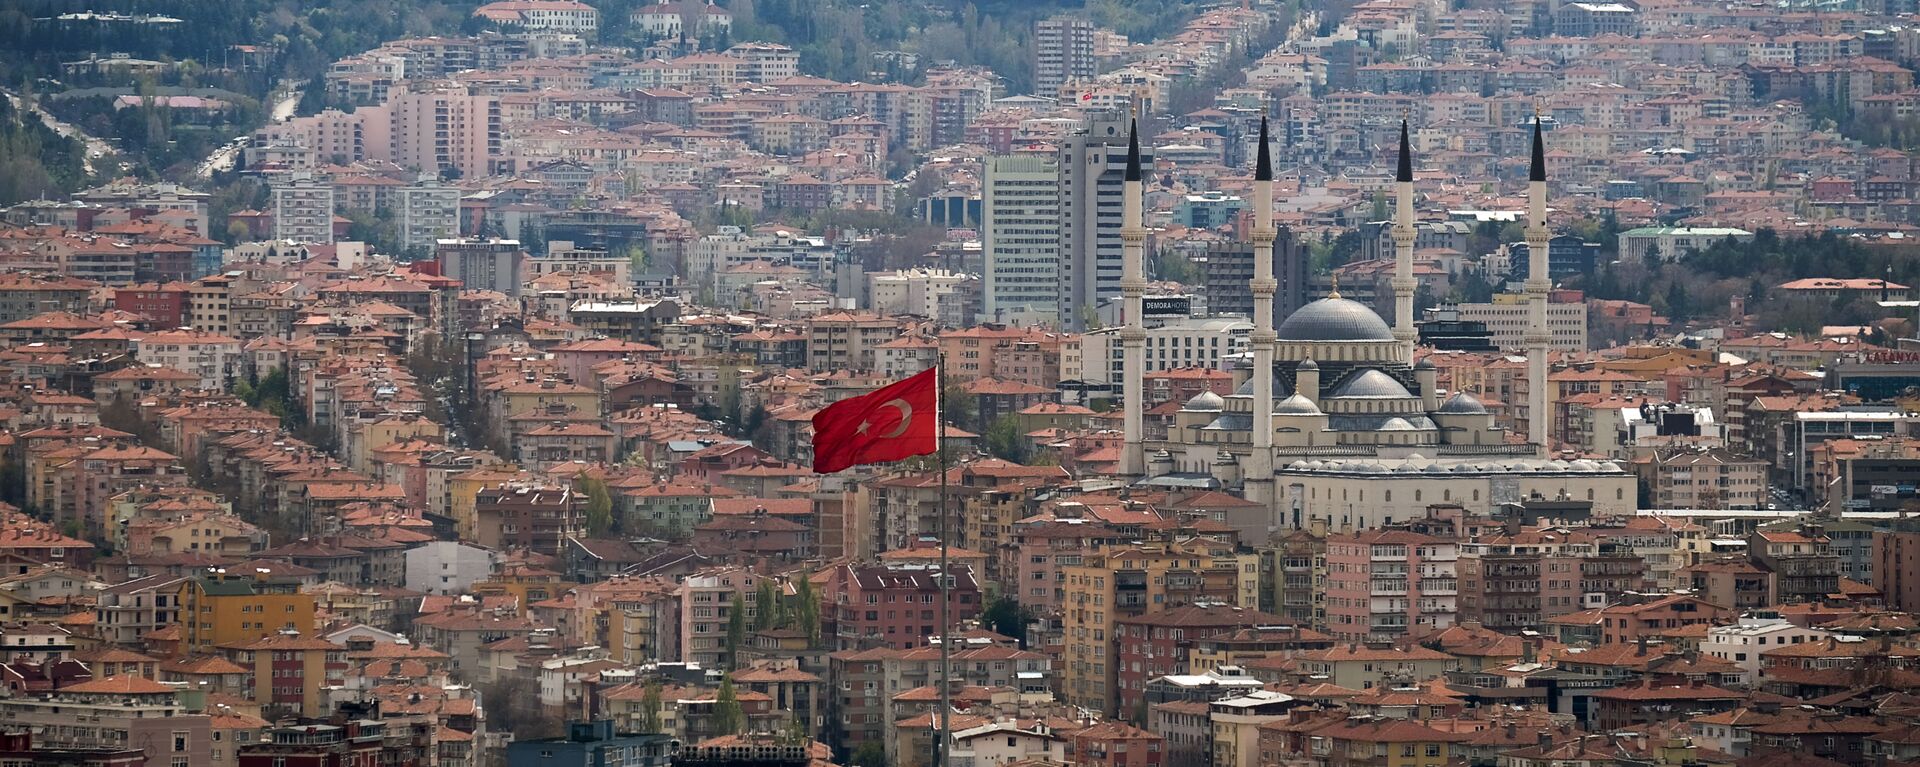 Вид на город Анкара. - Sputnik Абхазия, 1920, 02.10.2021